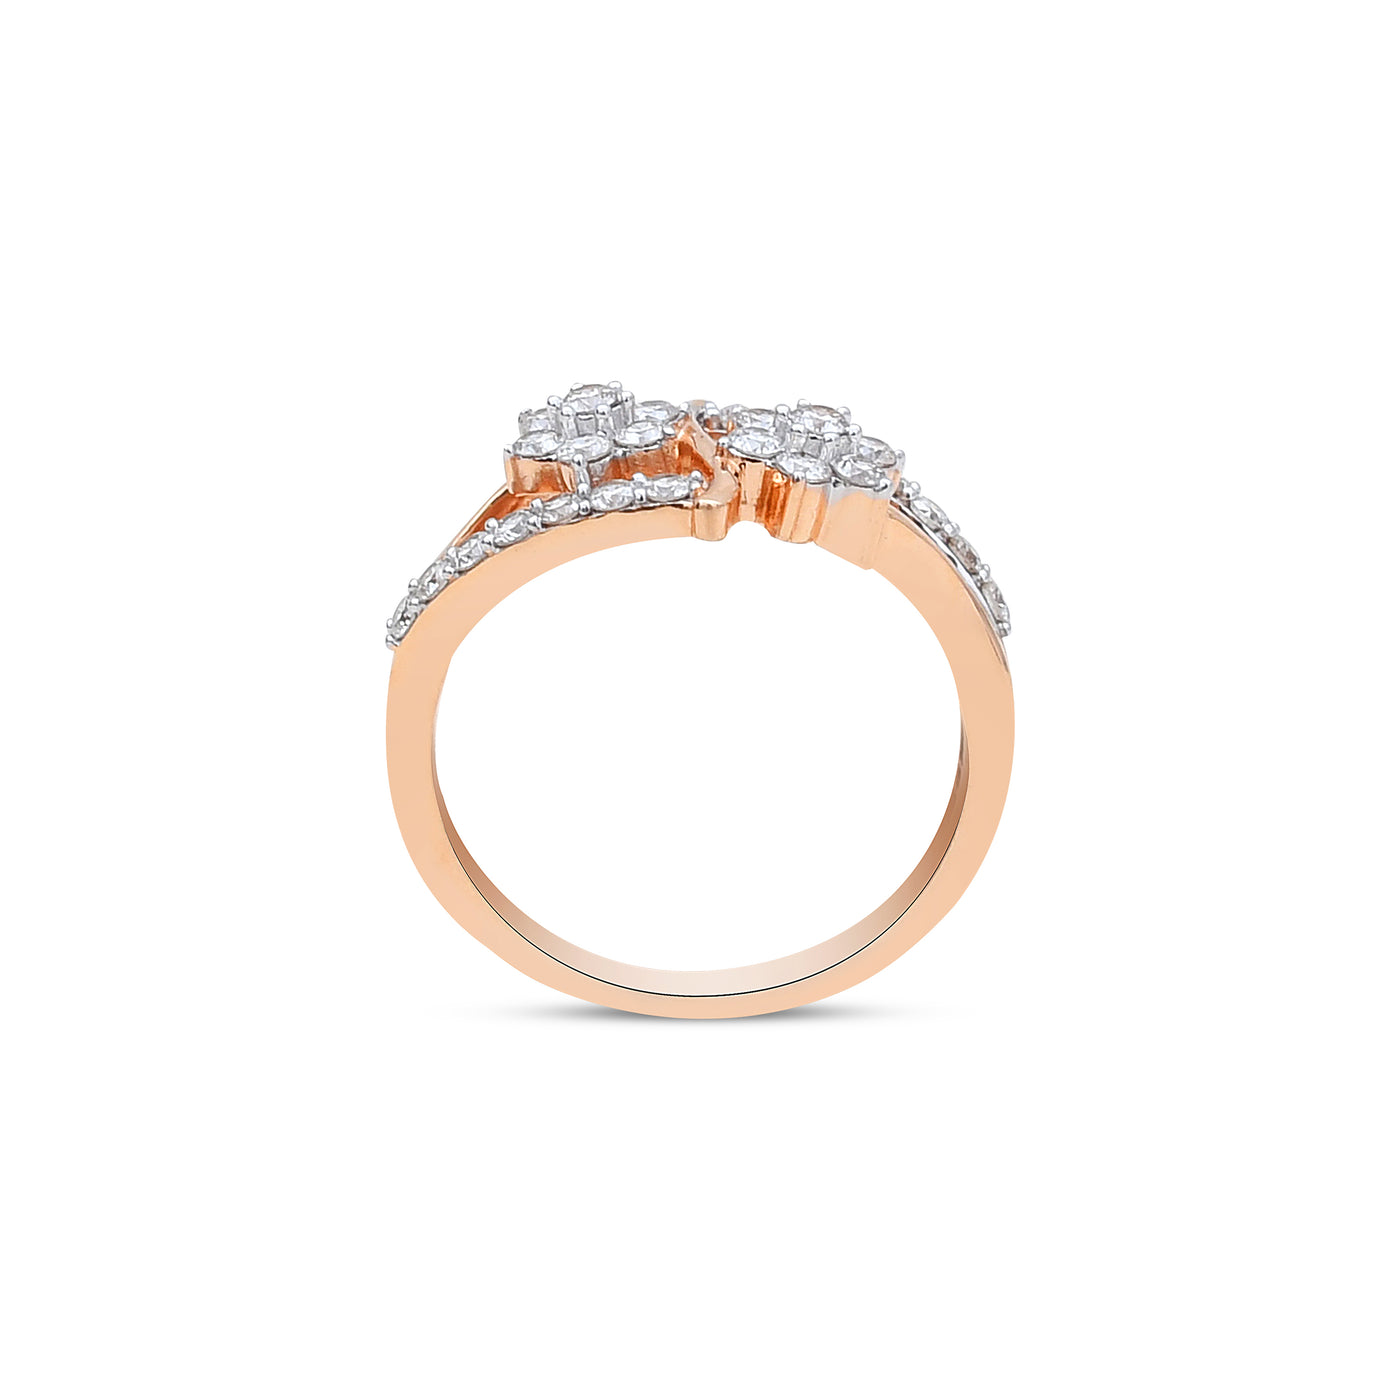 The Twin-Bloom Diamond Ring